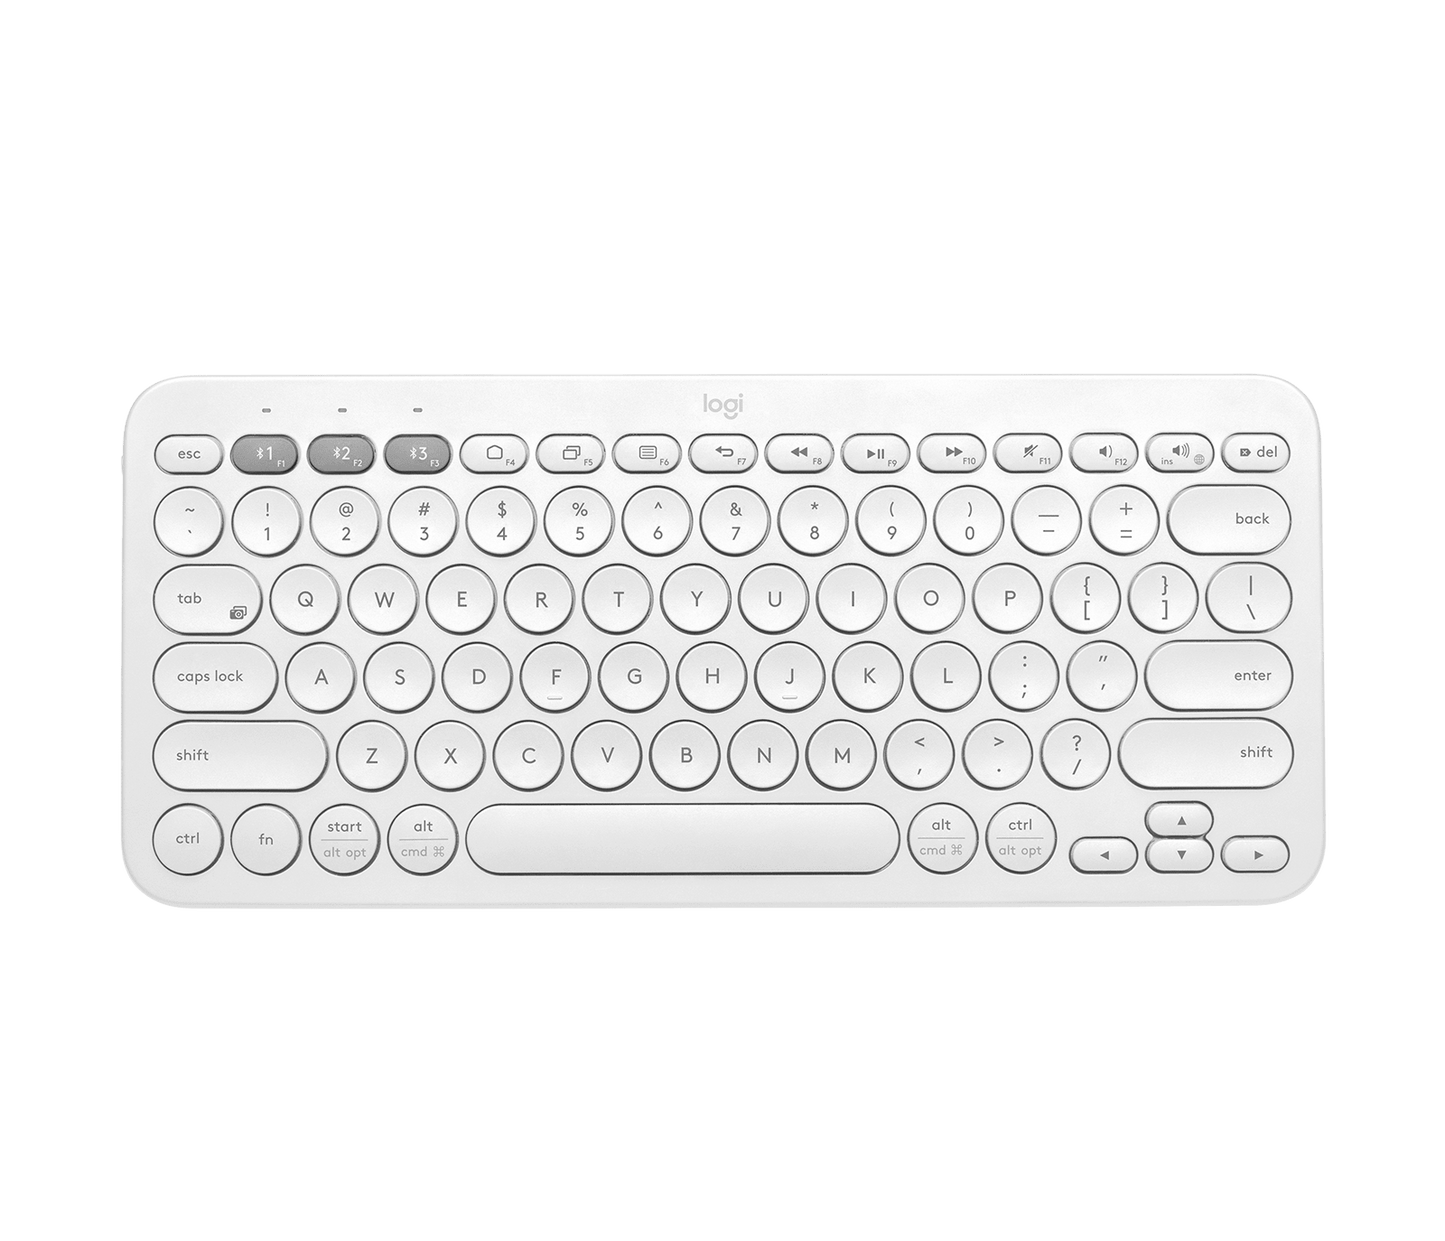 Logitech K380 Multi-Device Bluetooth Keyboard